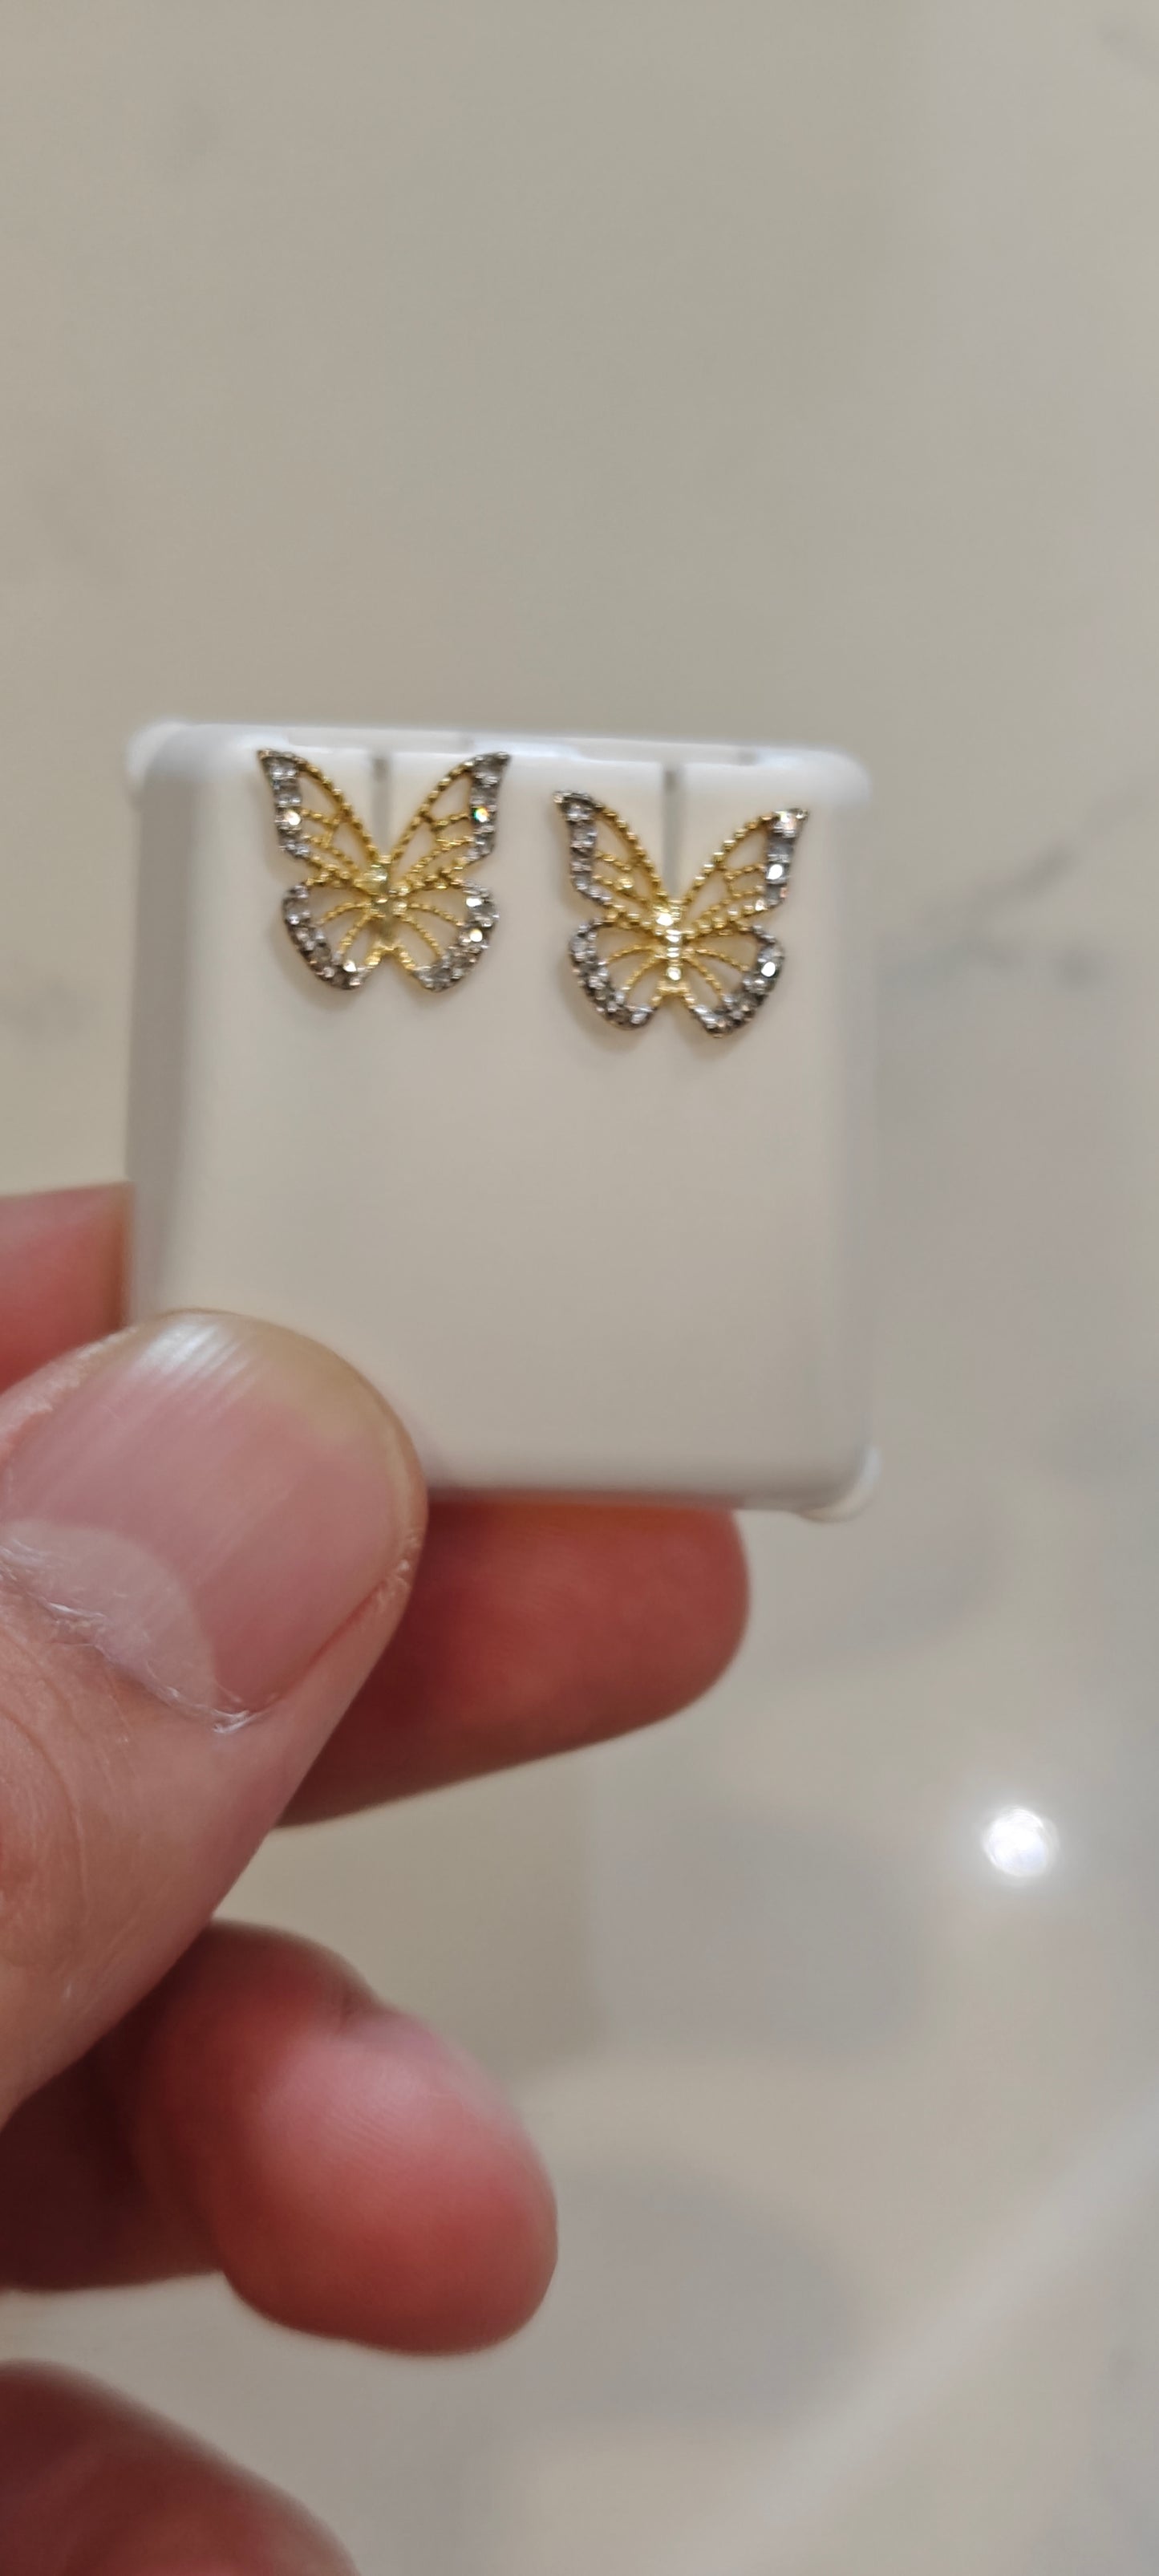 Butterfly Diamond Earrings